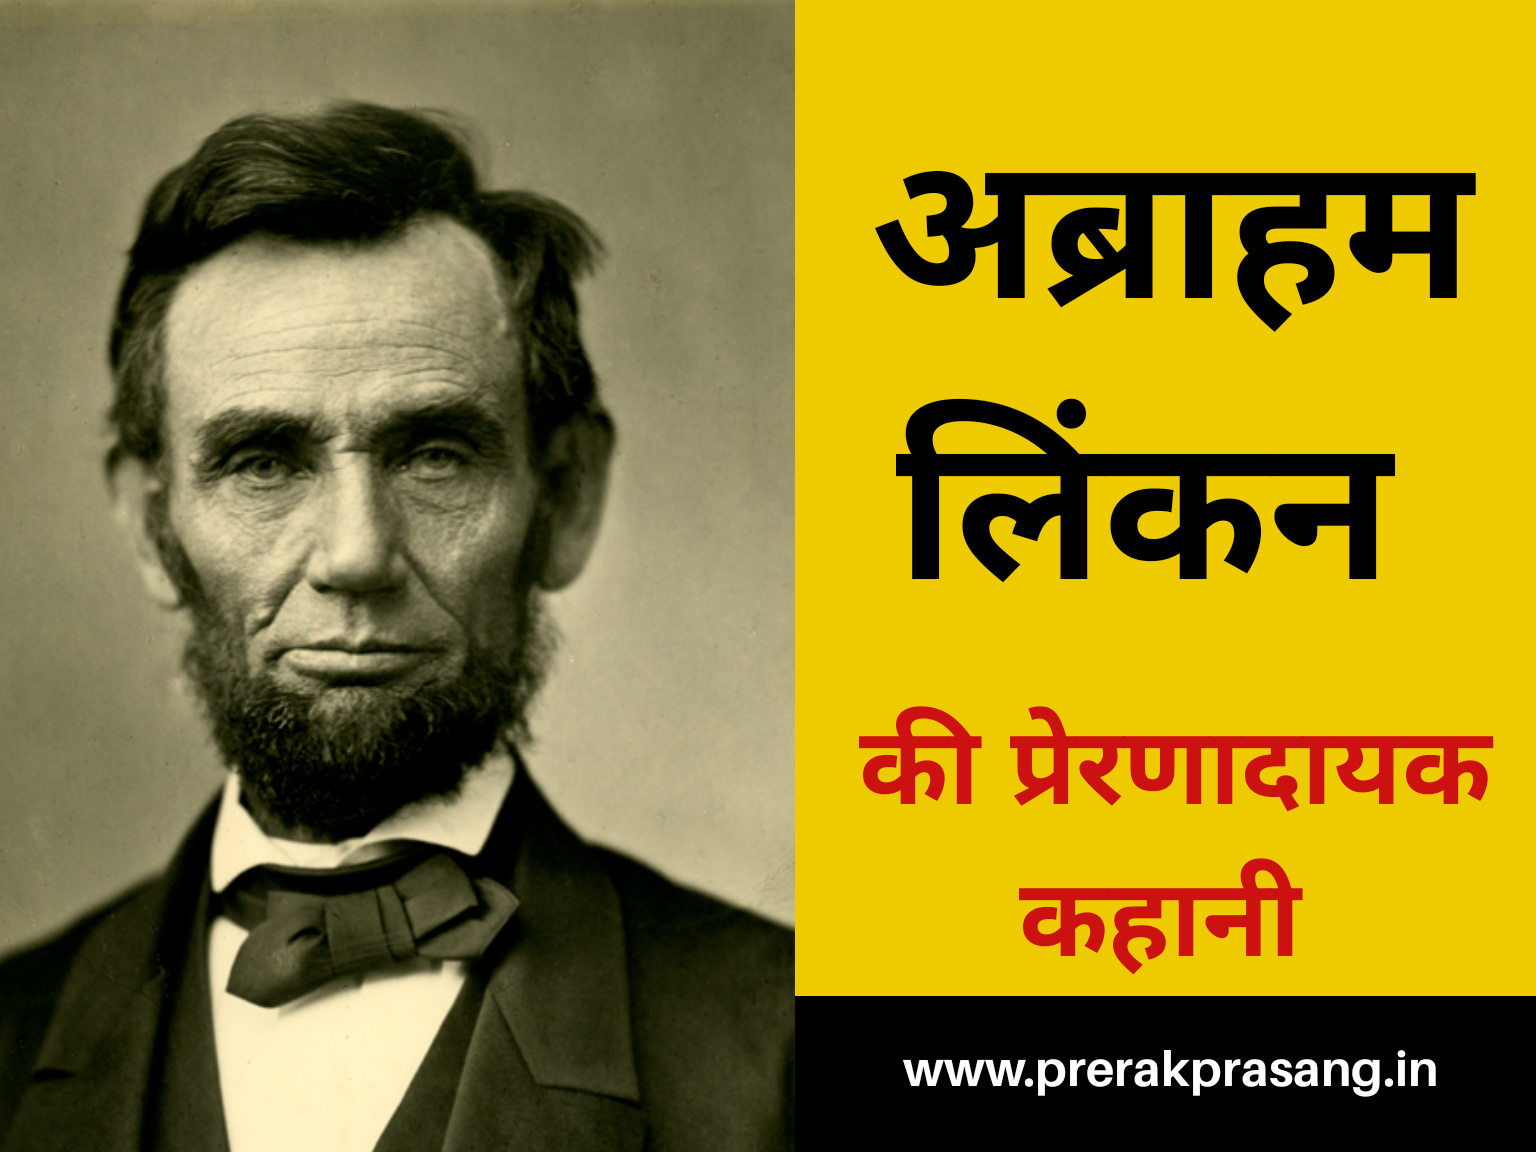 अब्राहम लिंकन,Abraham Lincoln, प्रेरक प्रसंग, प्रेरणादायक कहानी,motivational story in hindi,inspiring stories in hindi